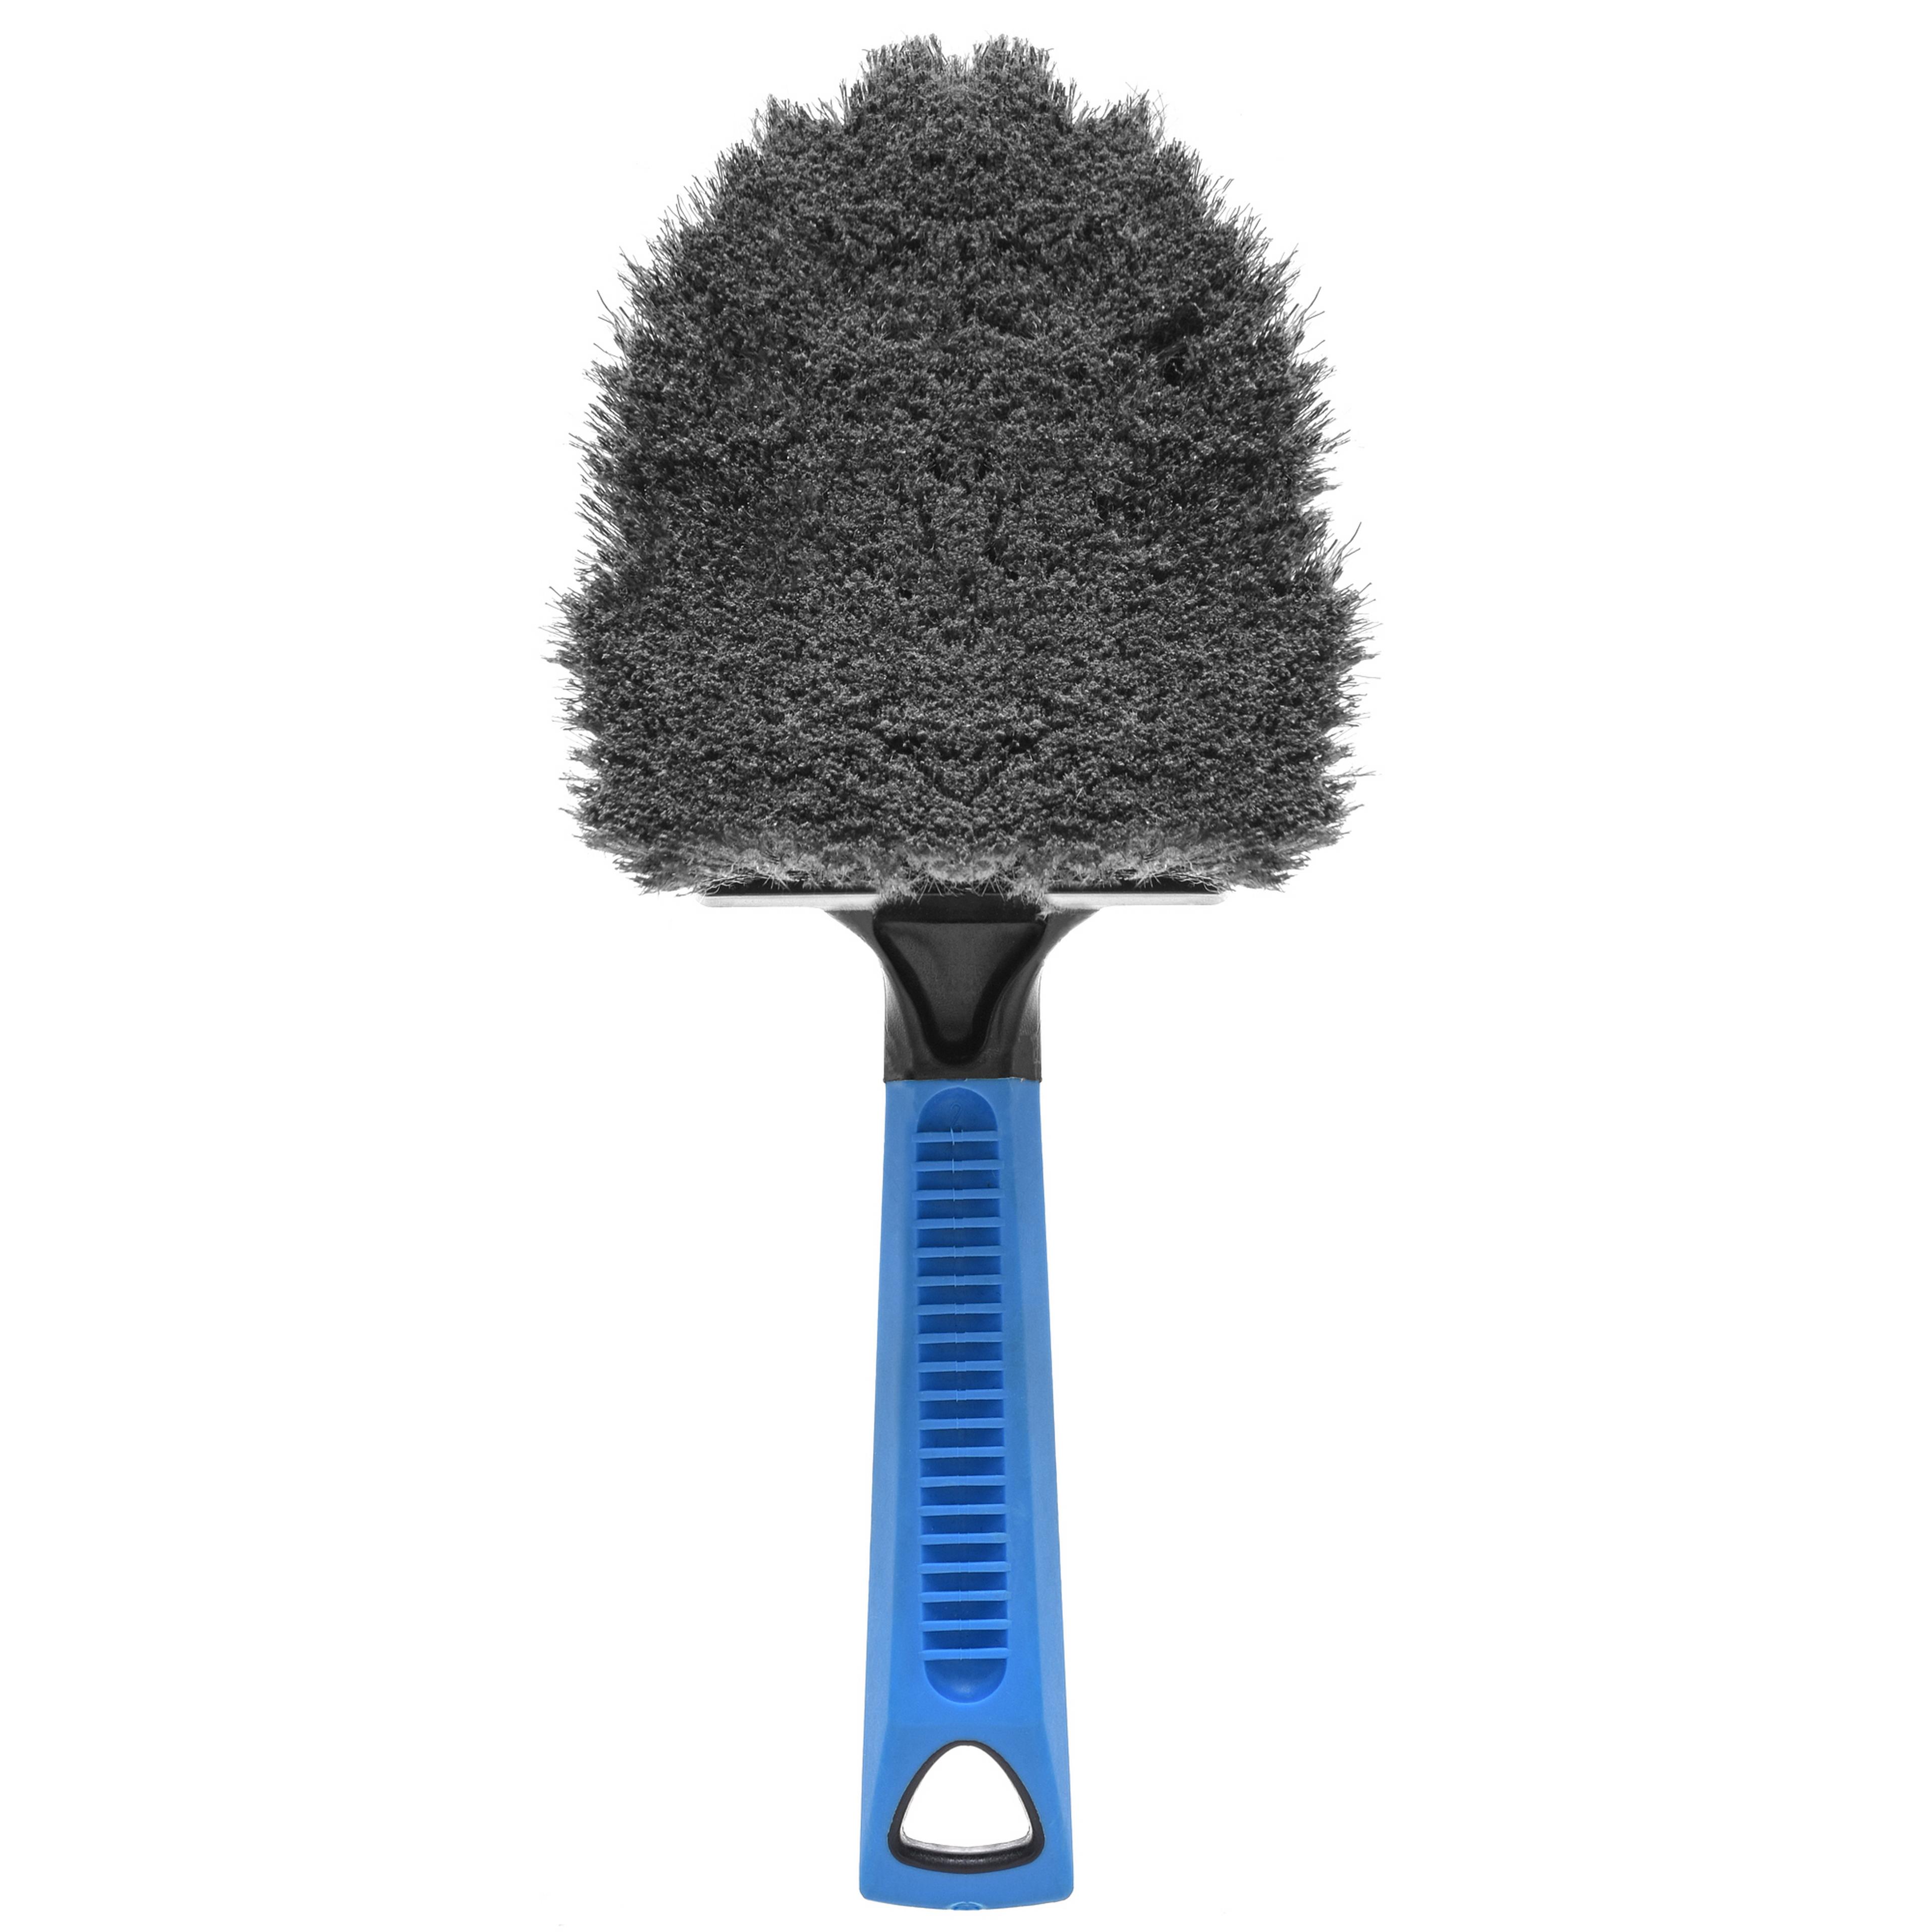 Car Brush, 5-piece Car Care Brush, Car Cleaning Brush, Car